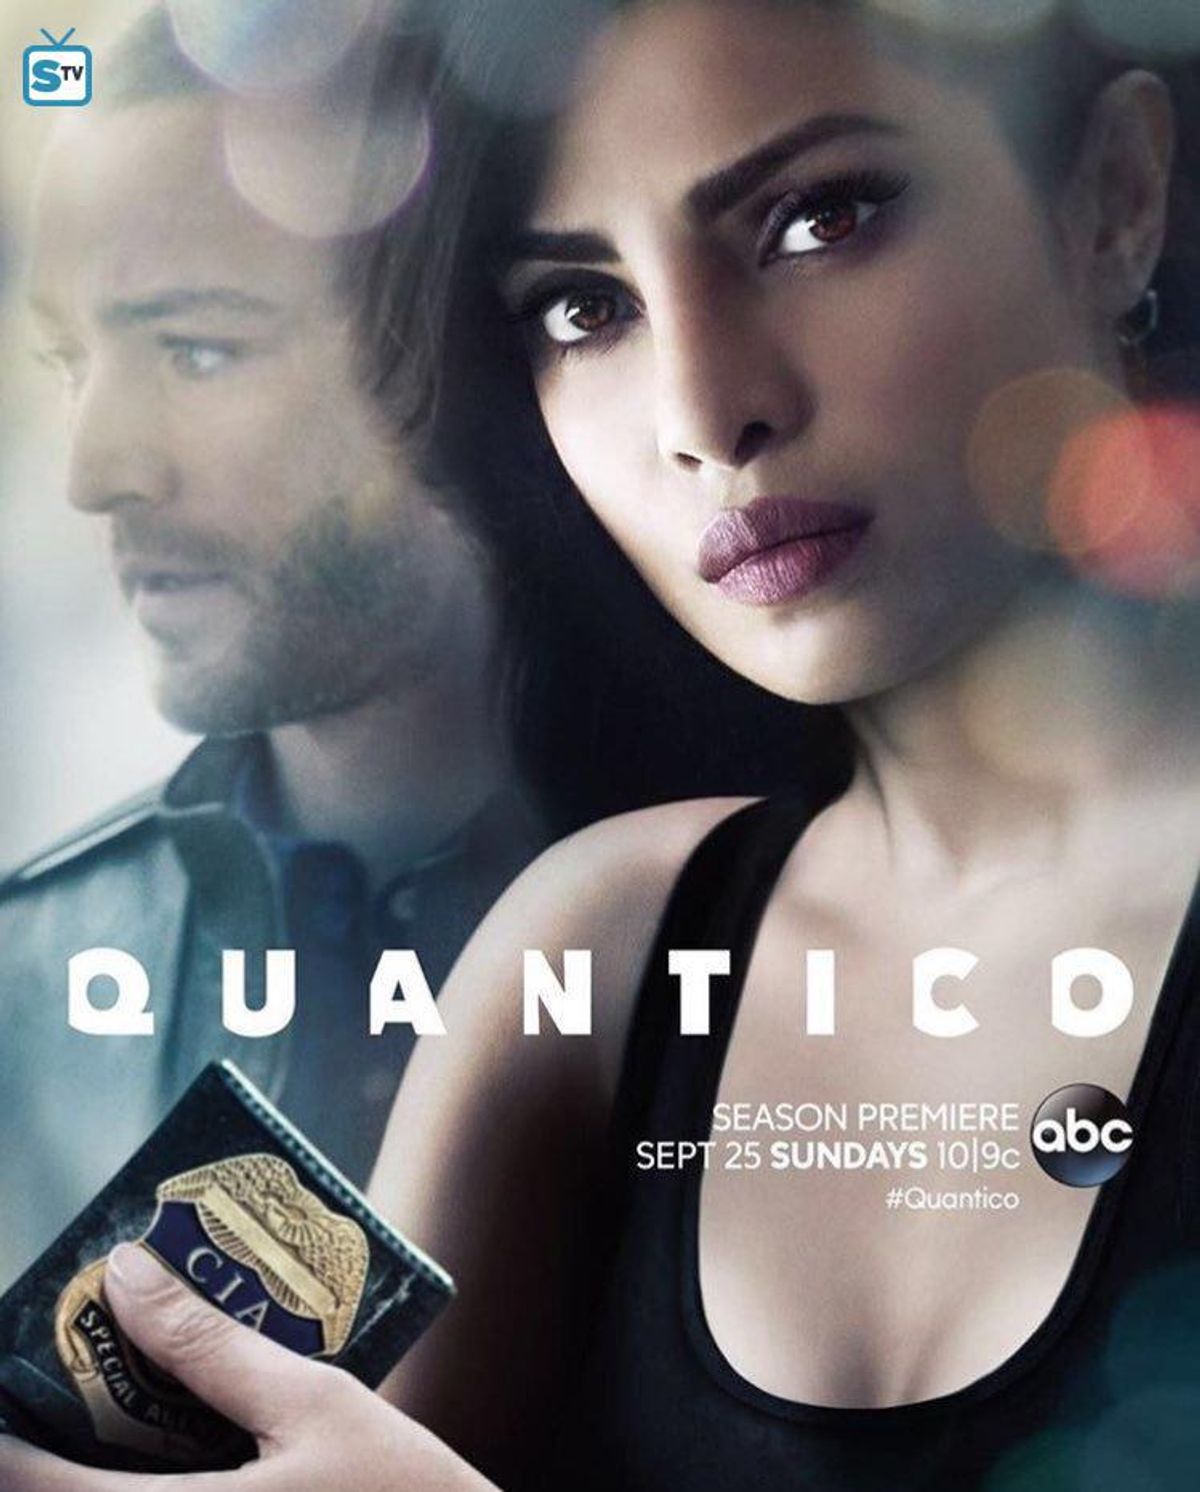 Quantico comes back for Season Two